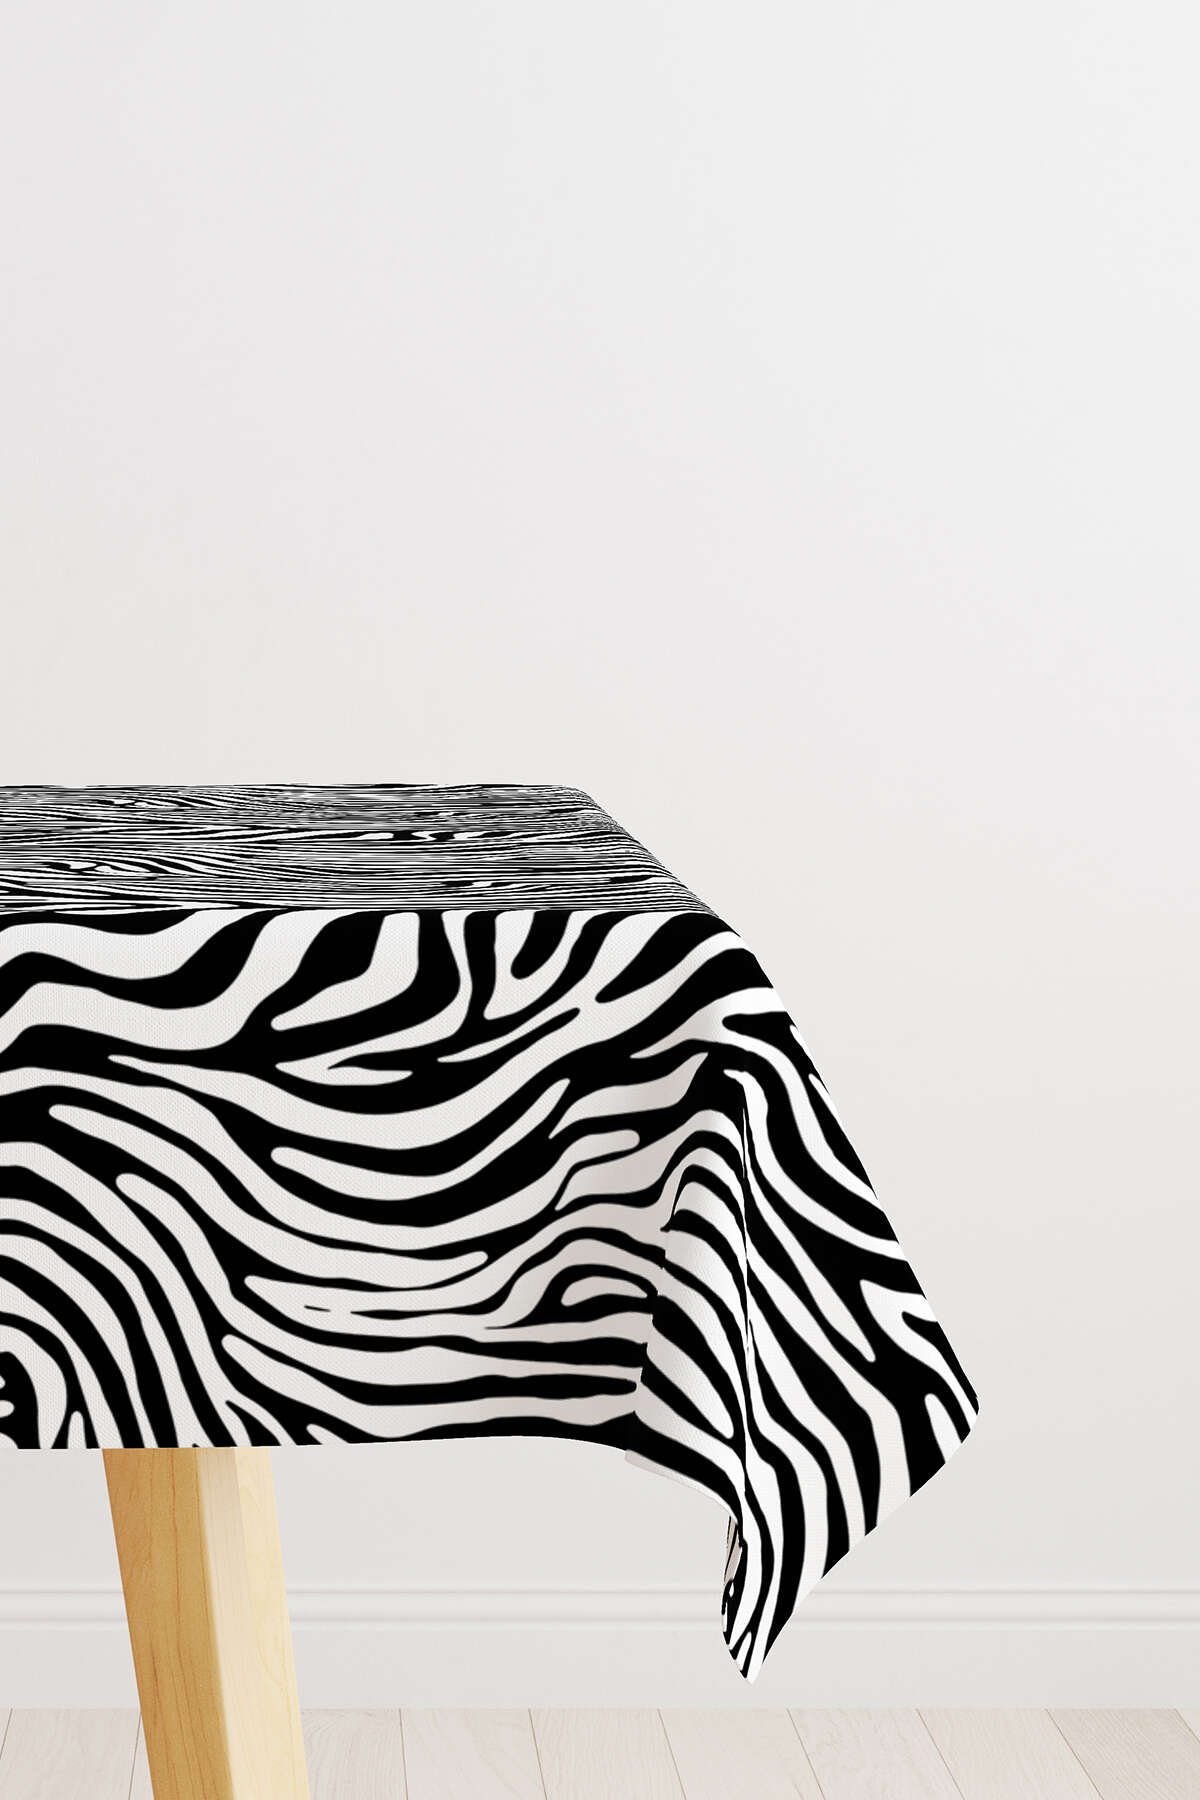 Siyah Beyaz Zebra Desenli Dijital Baskılı Masaörtüsü CGH386-MS